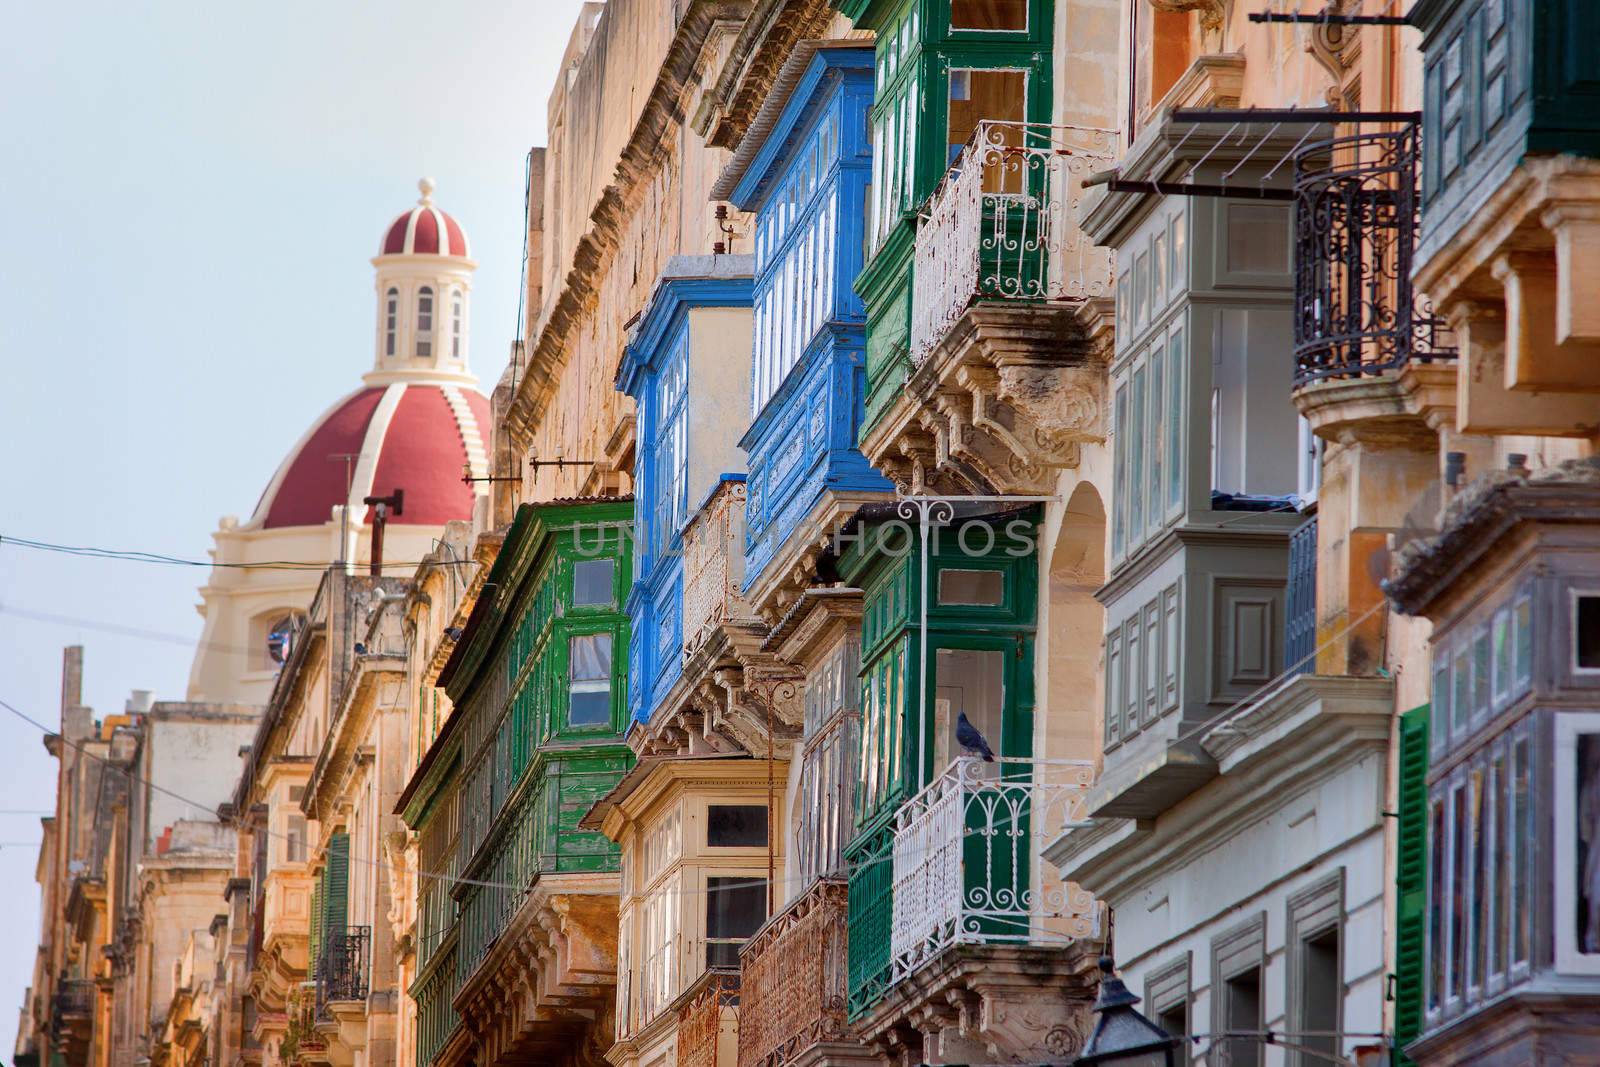 Wooden balconies Valletta, Malta by annems